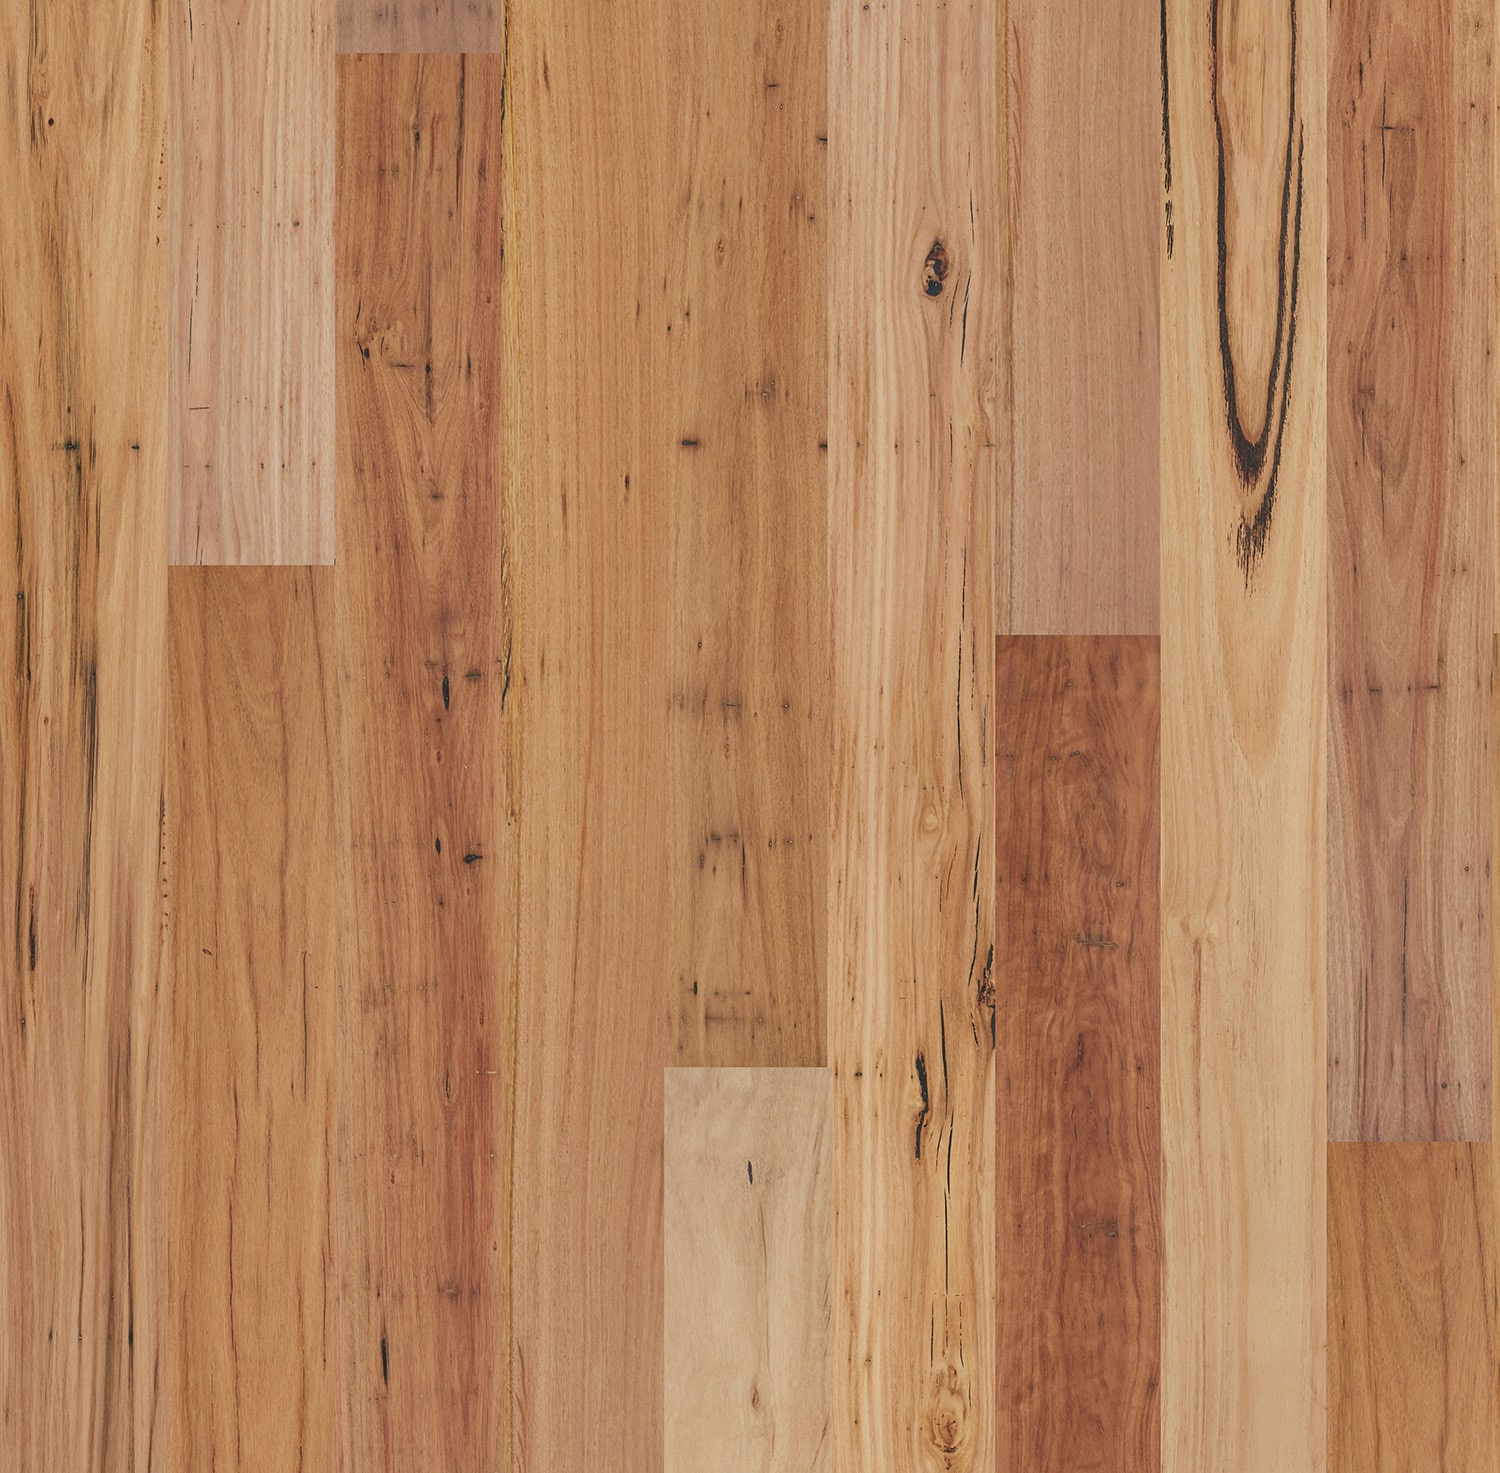 Eucalypt European Oak Flooring in Blackbutt Rustic